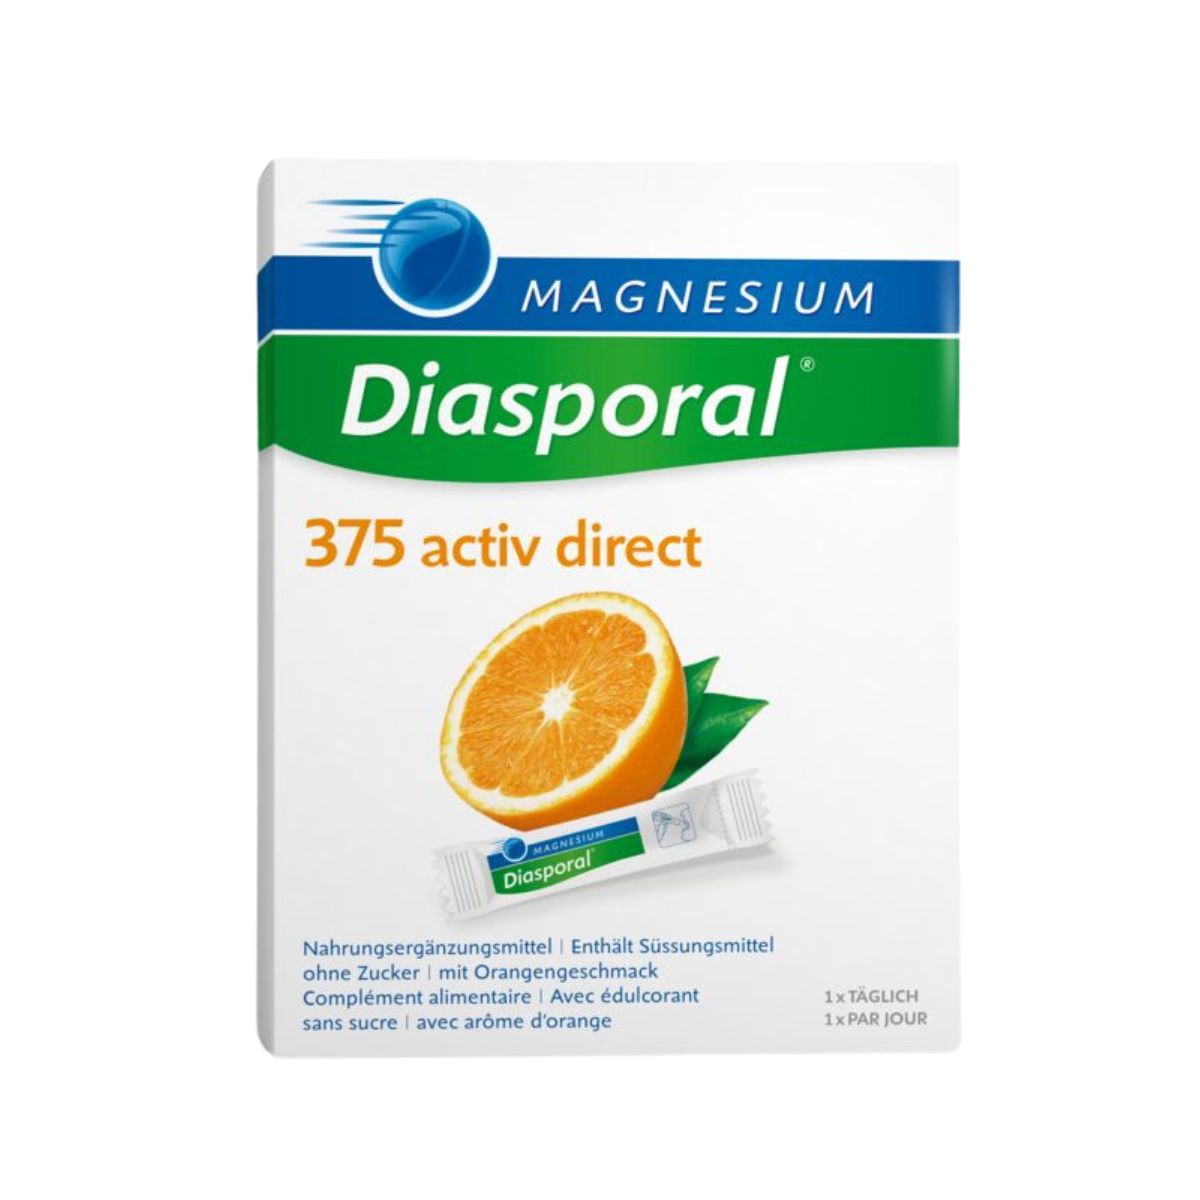 MAGNESIUM Diasporal Activ Direct orange 20 Stück